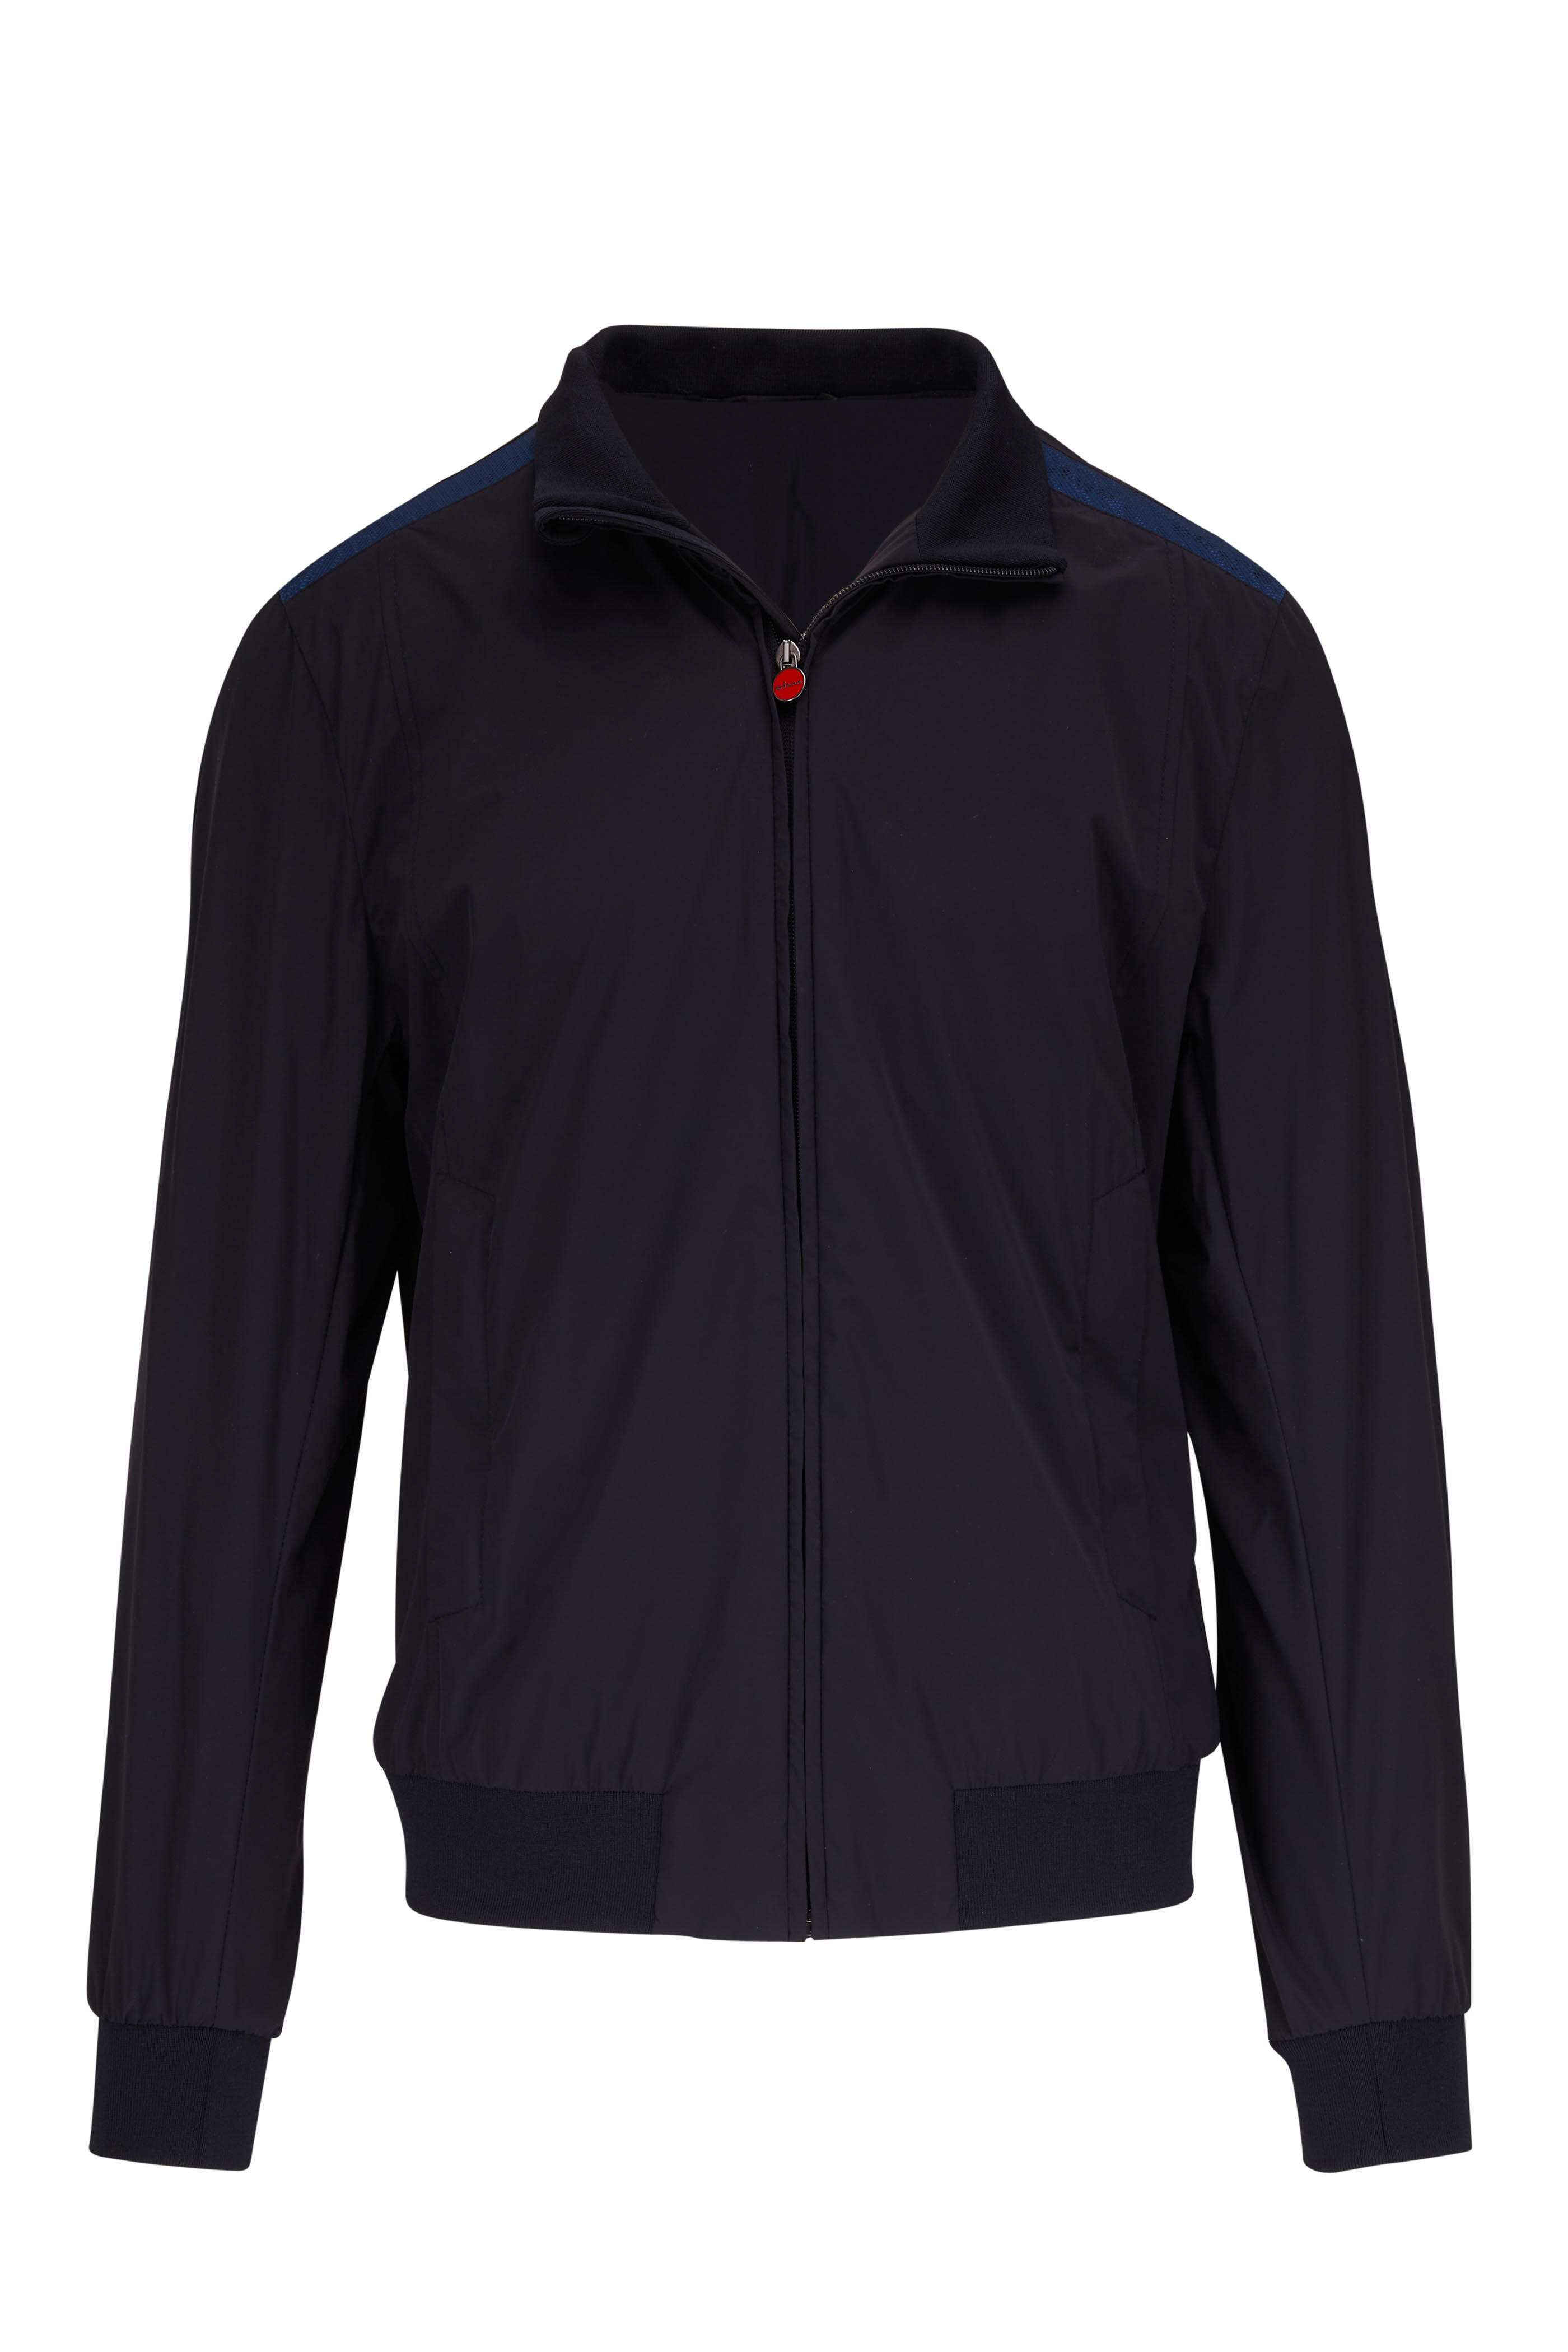 Kiton - Black & Blue Nylon Jacket | Mitchell Stores